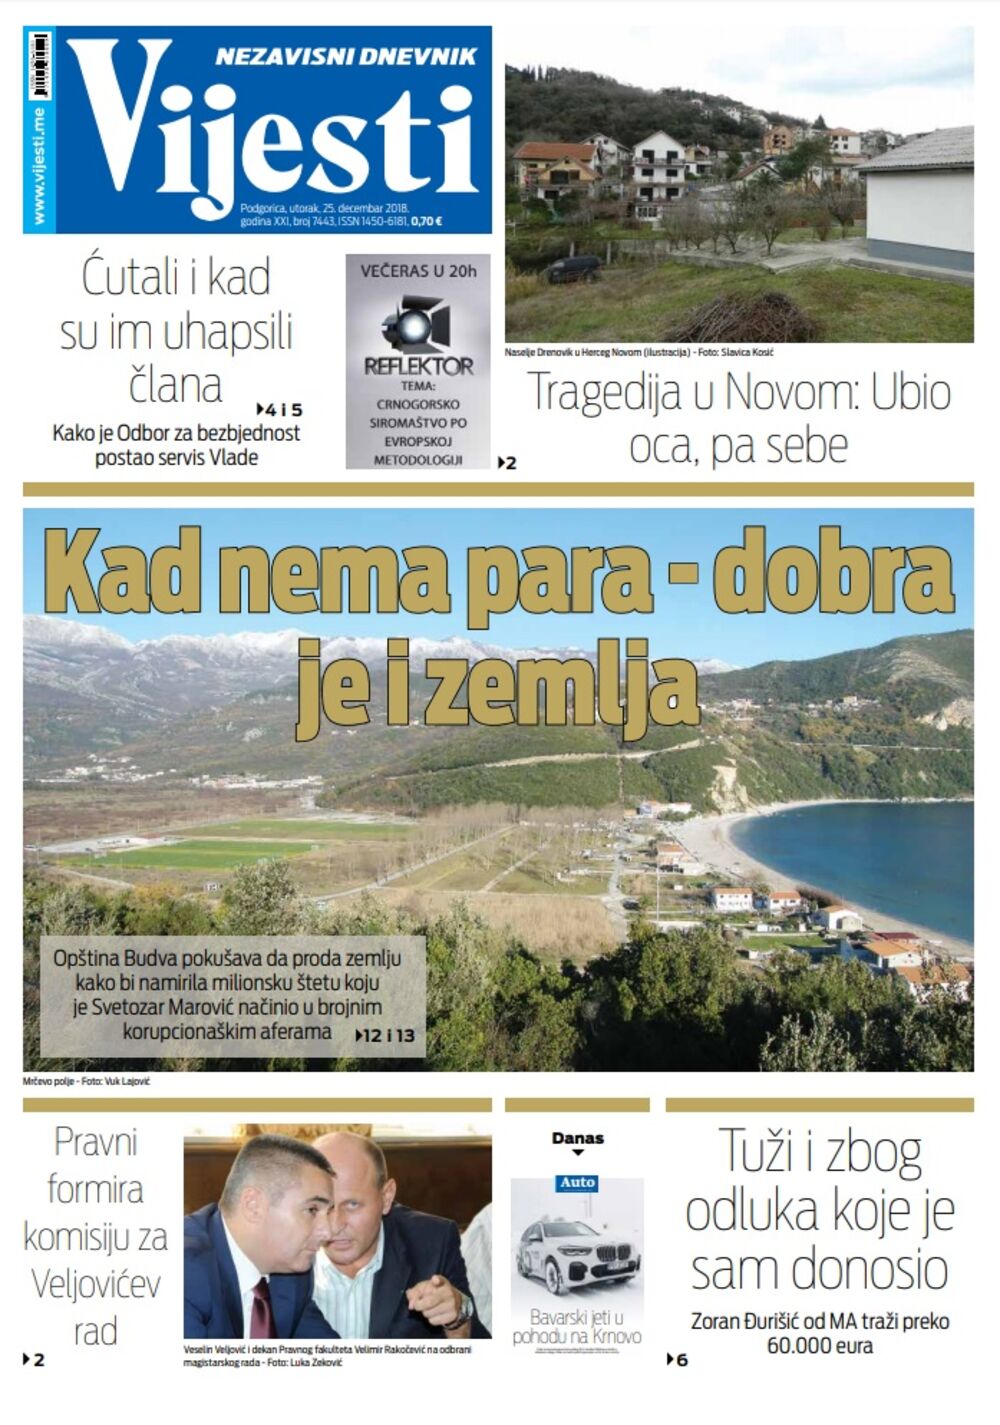 Naslovna strana "Vijesti" za 25. decembar, Foto: Vijesti